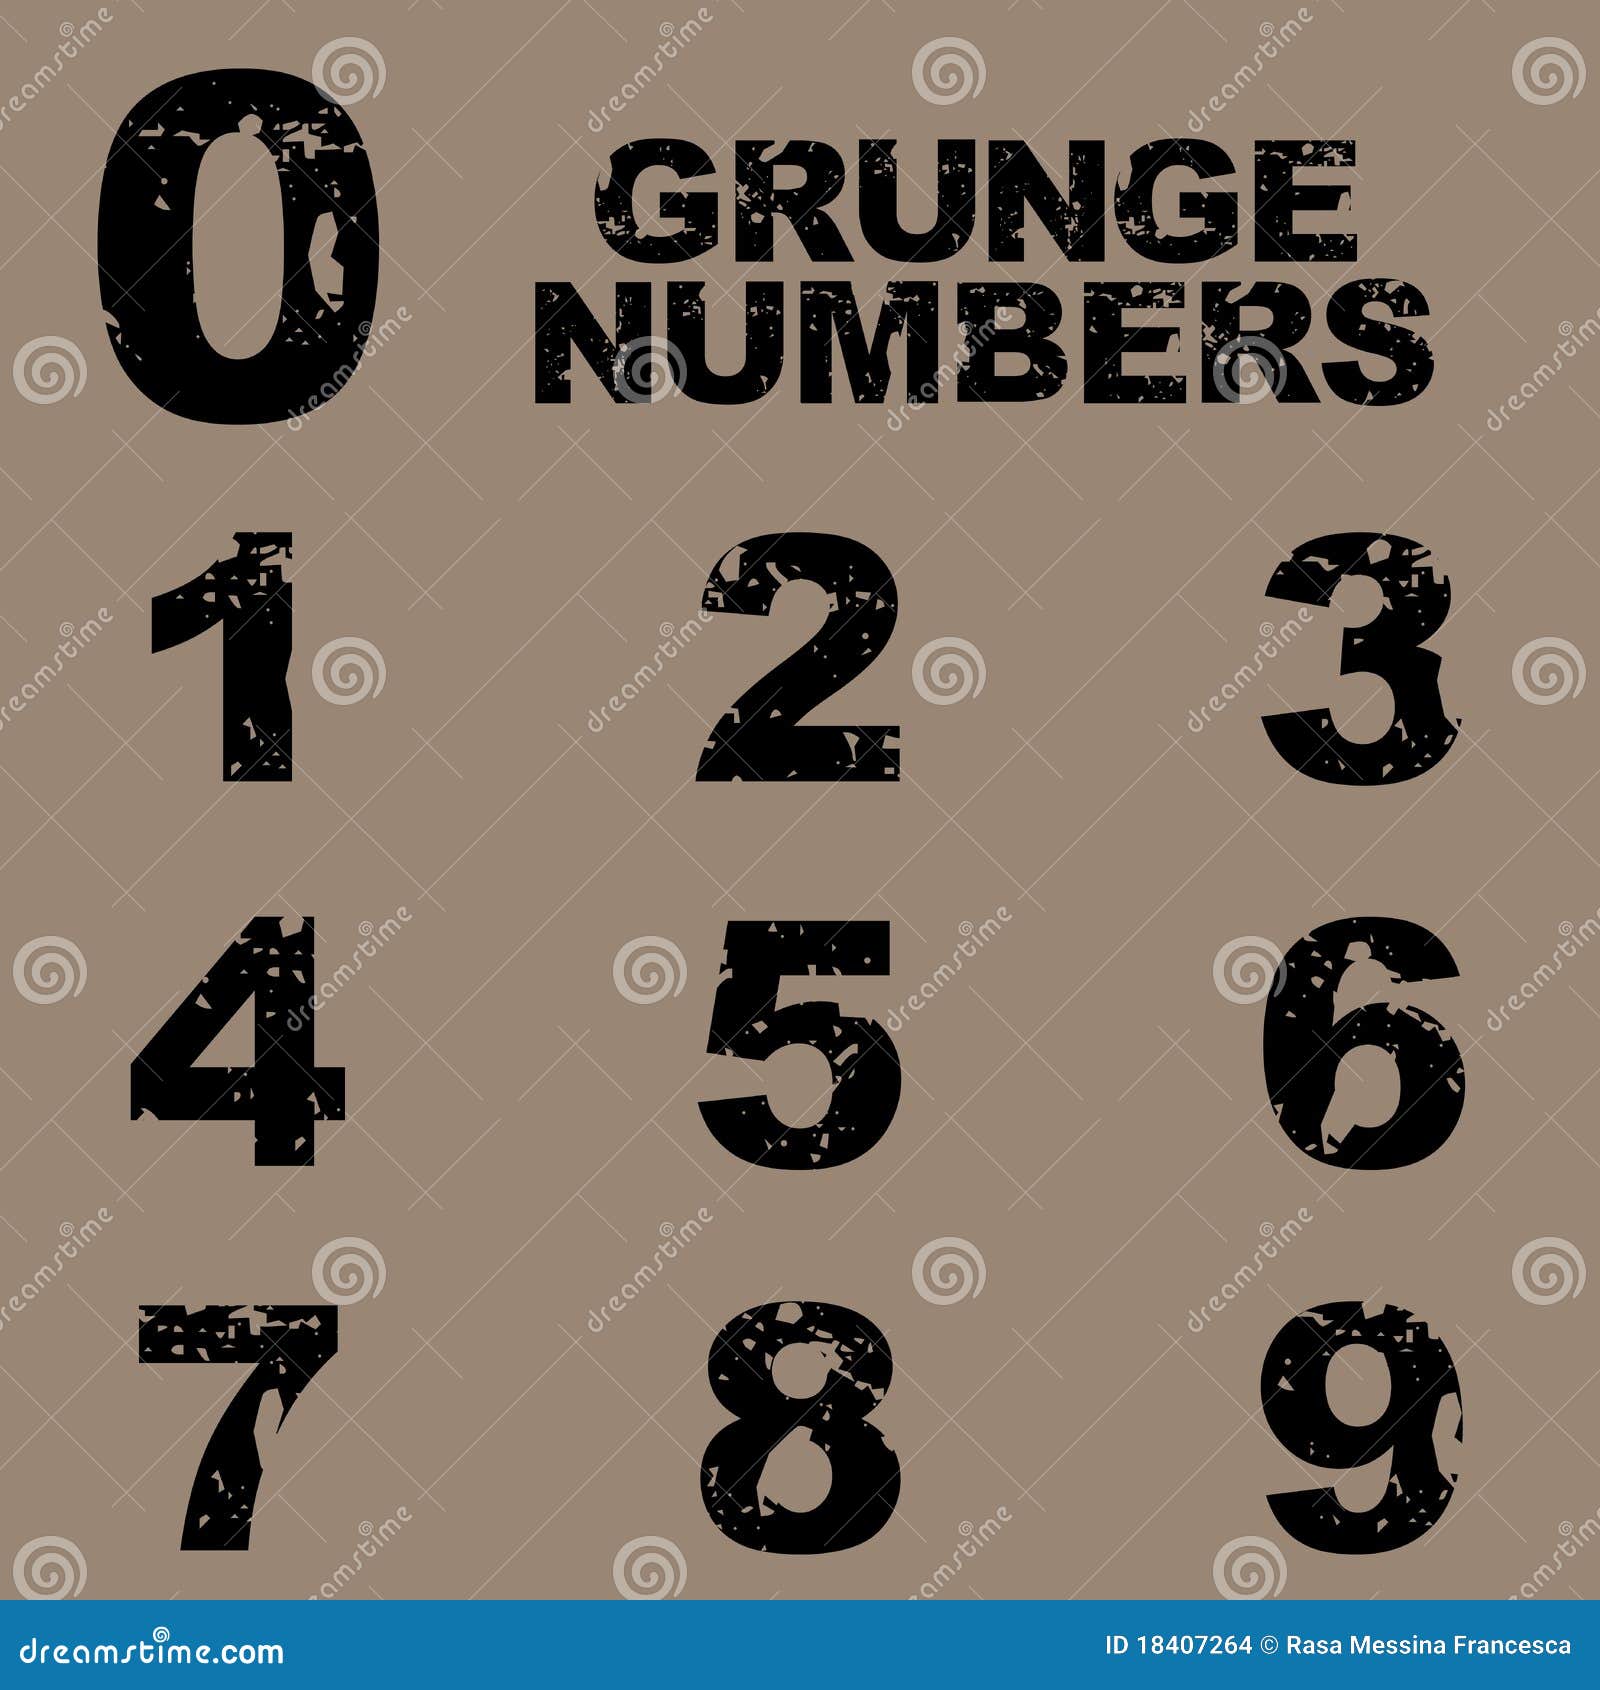 grunge numbers